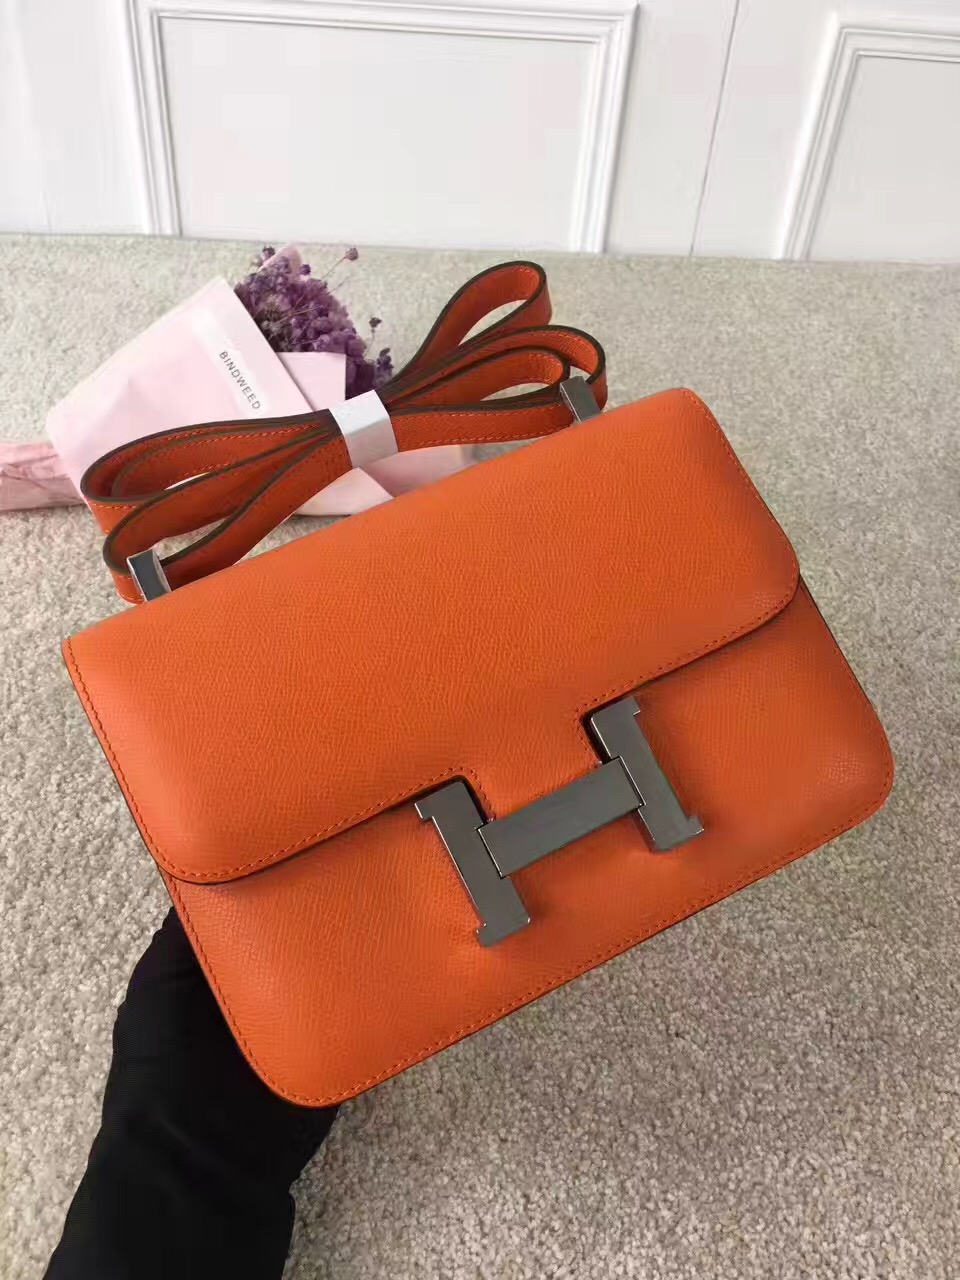 Hermes Constance top leather orange handbags